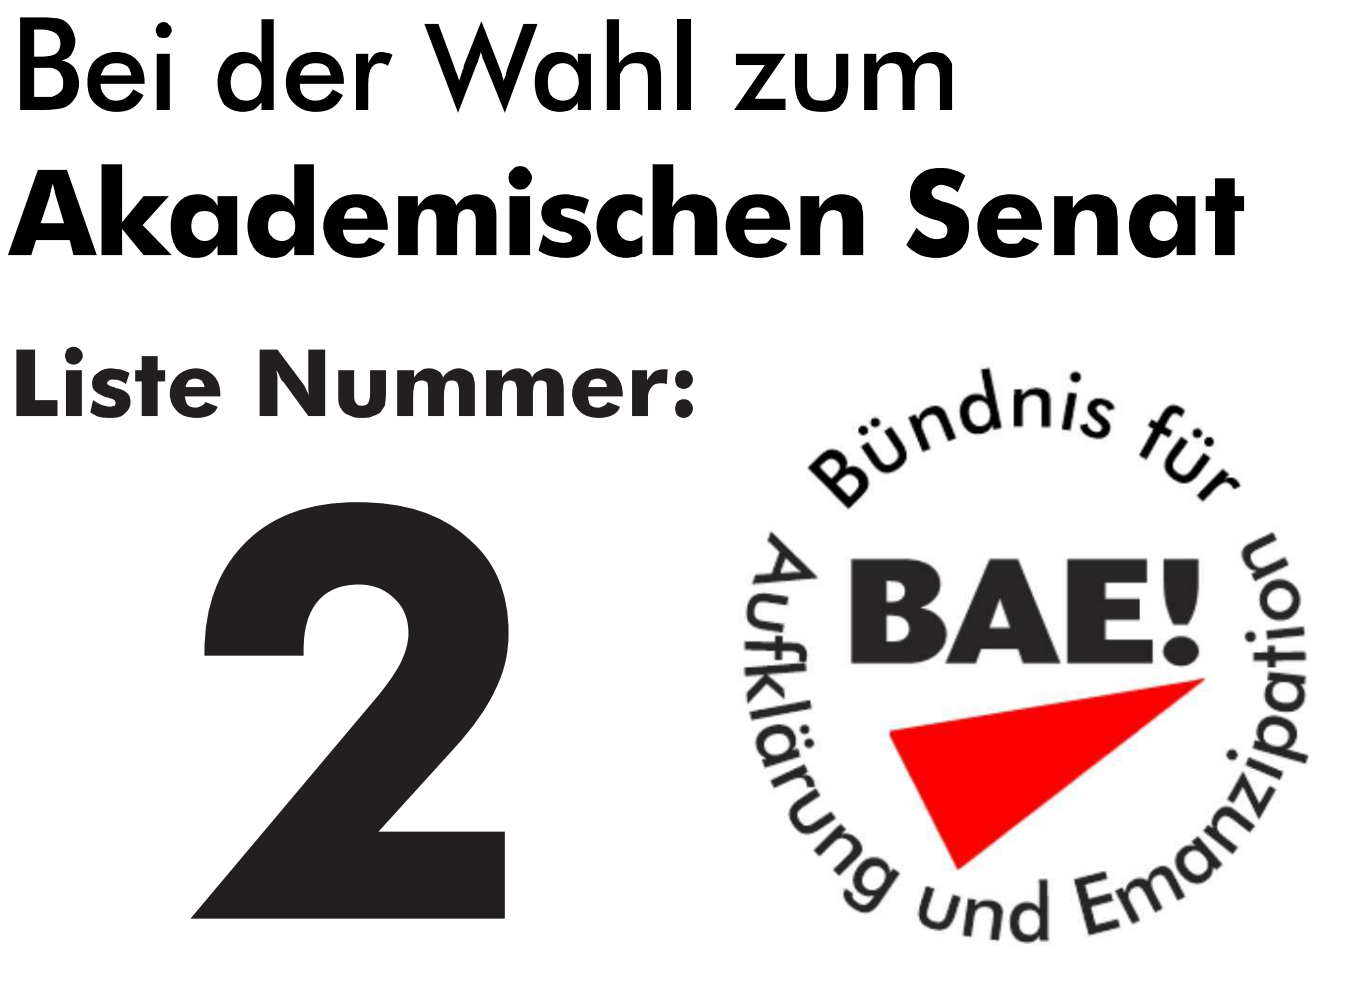 Bündnis für Aufklärung und Emanzipation (BAE!)